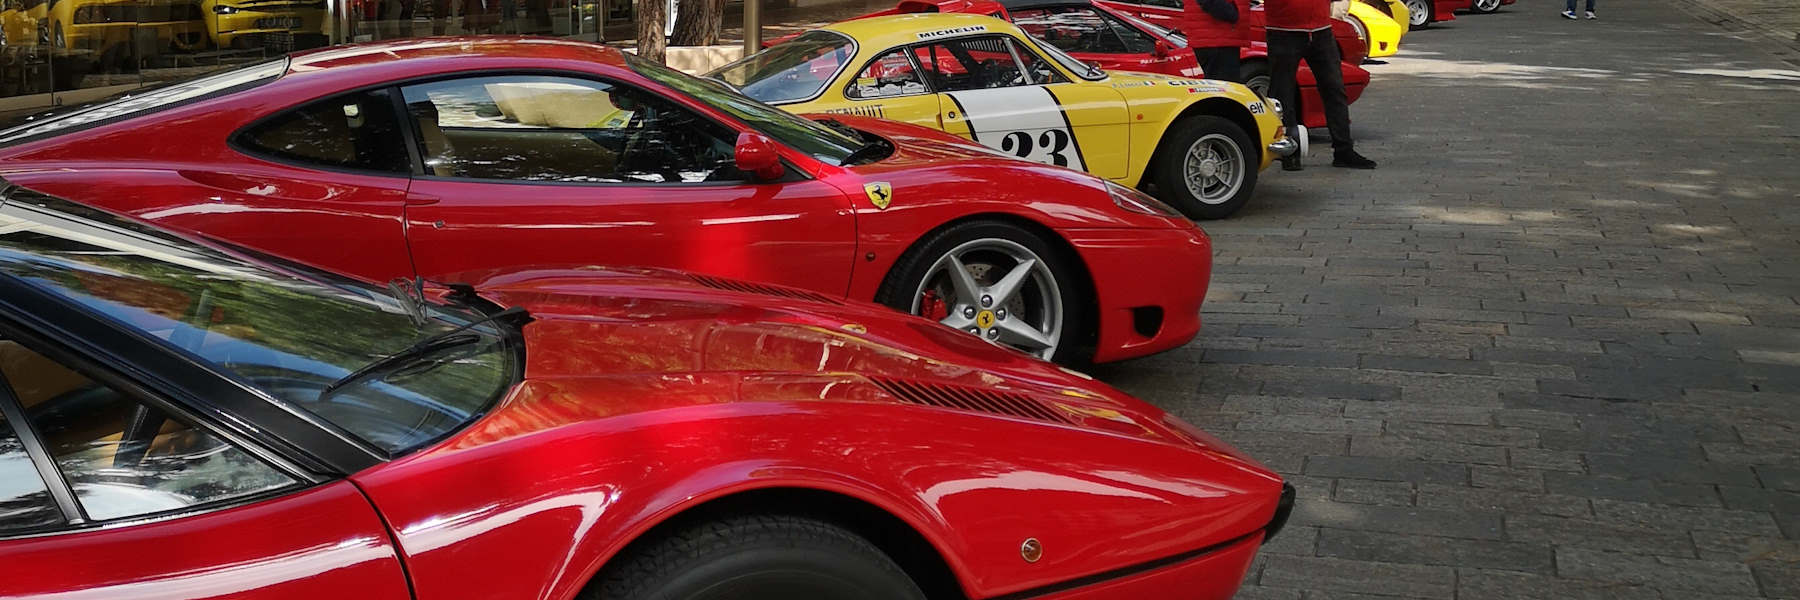 Ferrari-Treffen